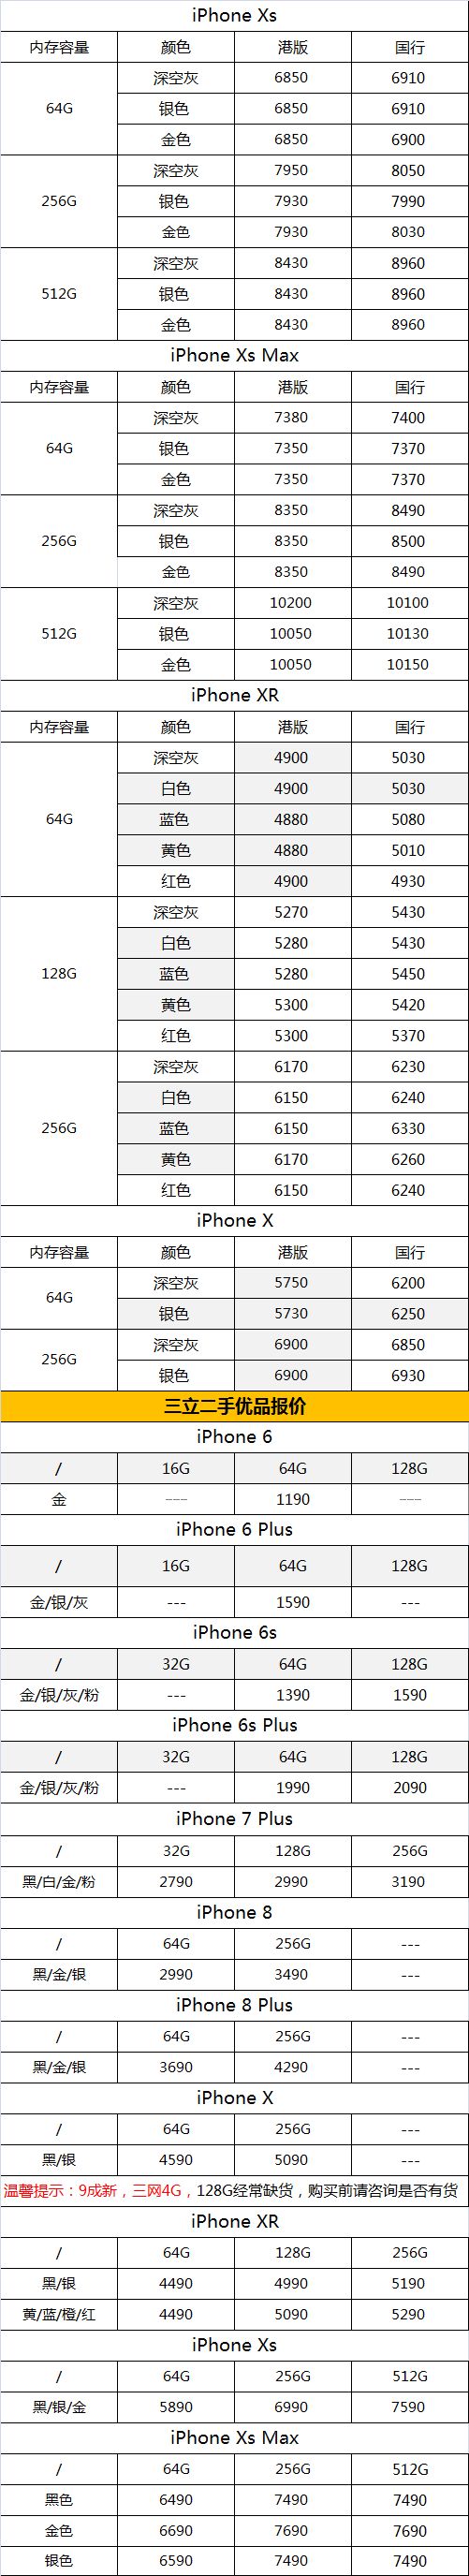 【今日报价】iphone xs/xs max及二手苹果手机7月23日报价